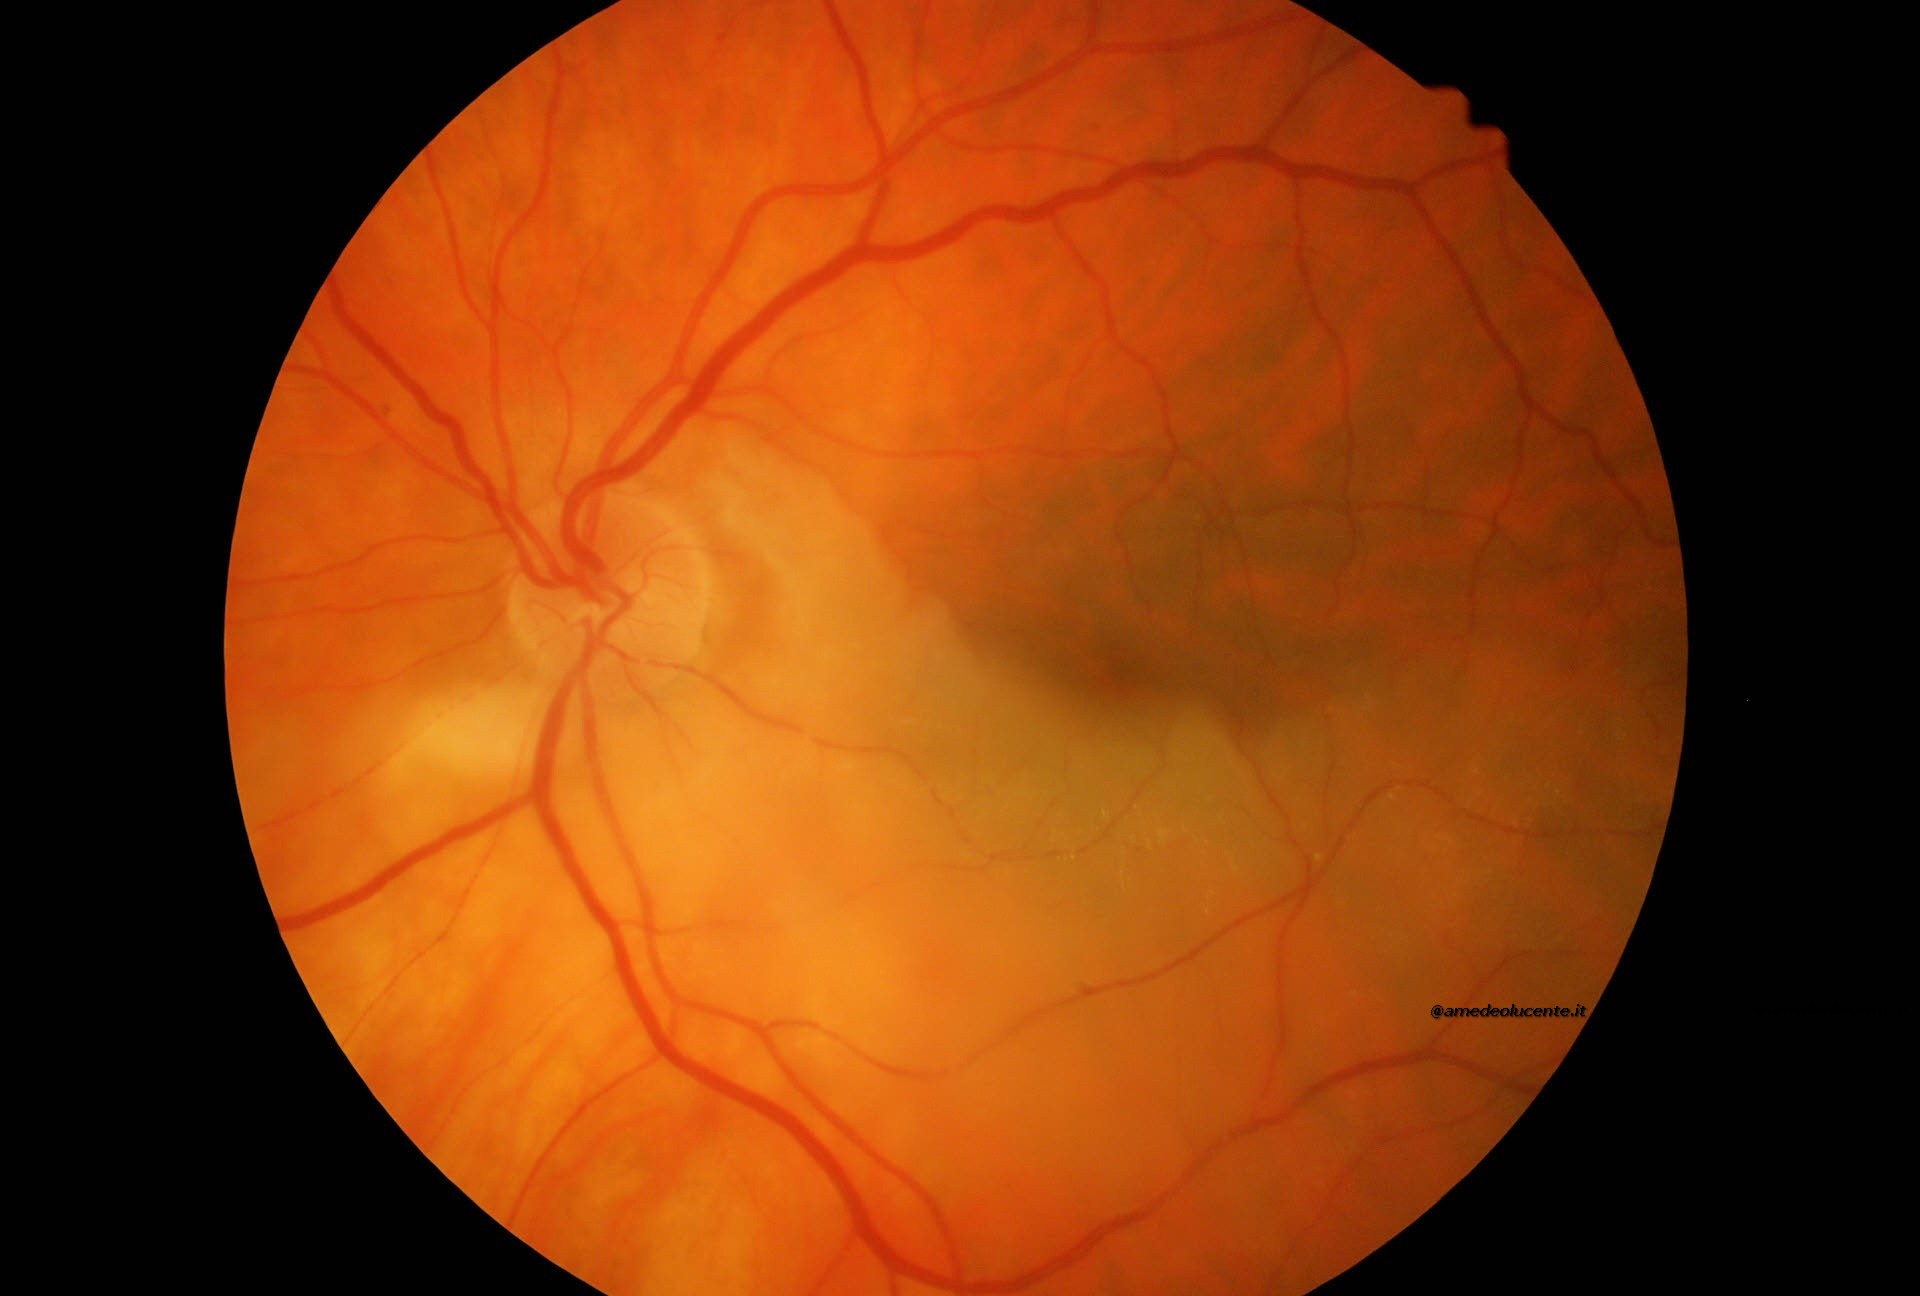 Occlusione emiciclica arteria centrale retina